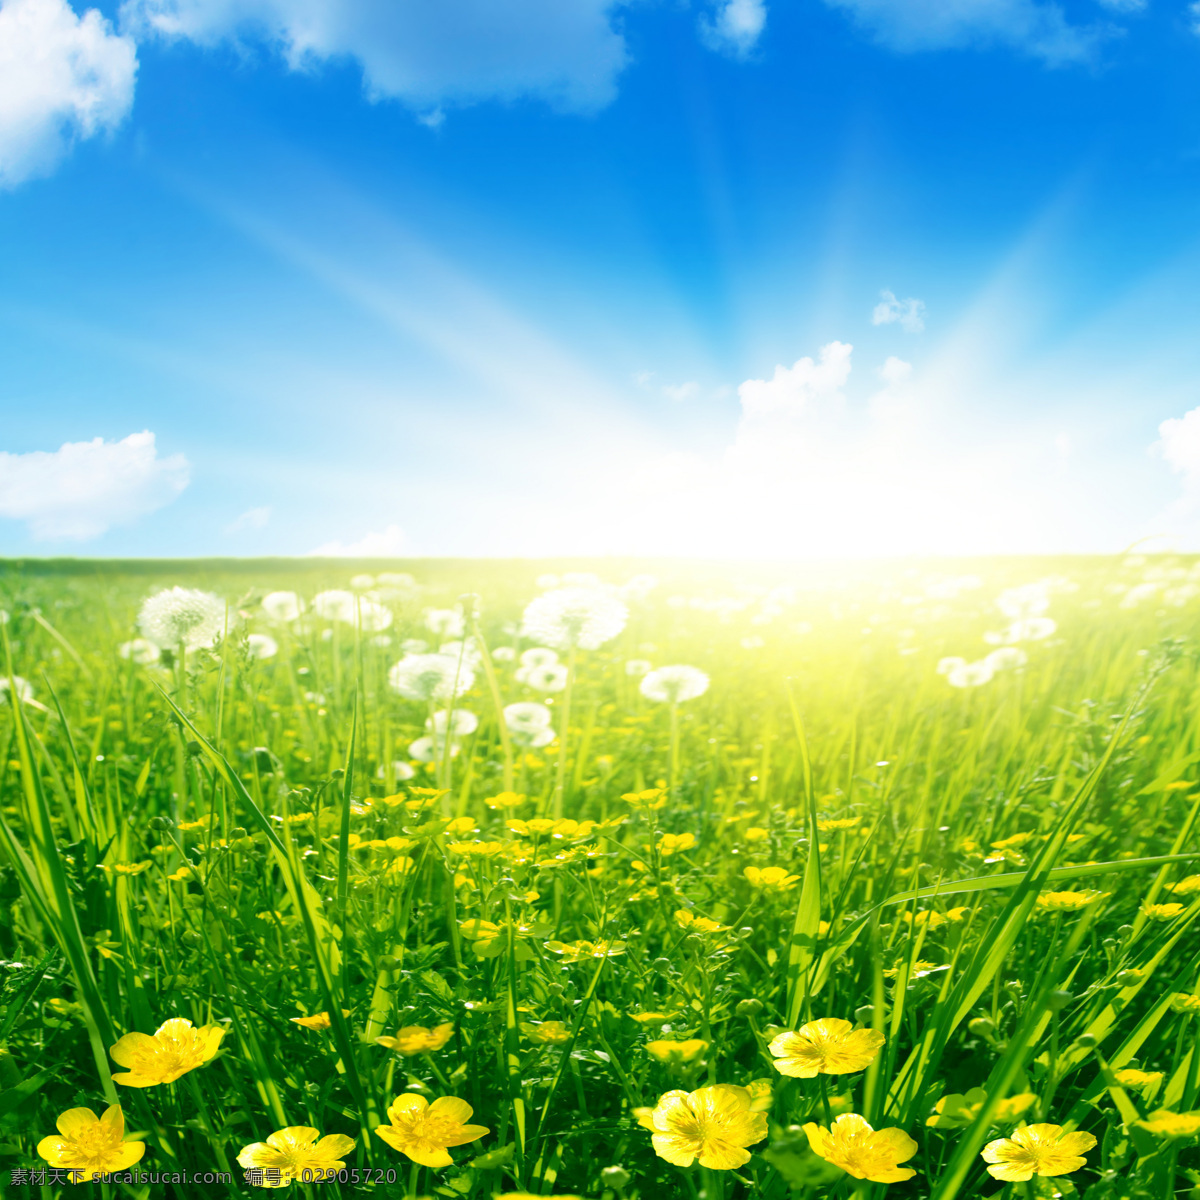 蓝天 白云 草地 美丽风景 景色 草原 美景 日出 阳光 照射 平原 青草 绿地 野花 自然风景 自然景观 黄色